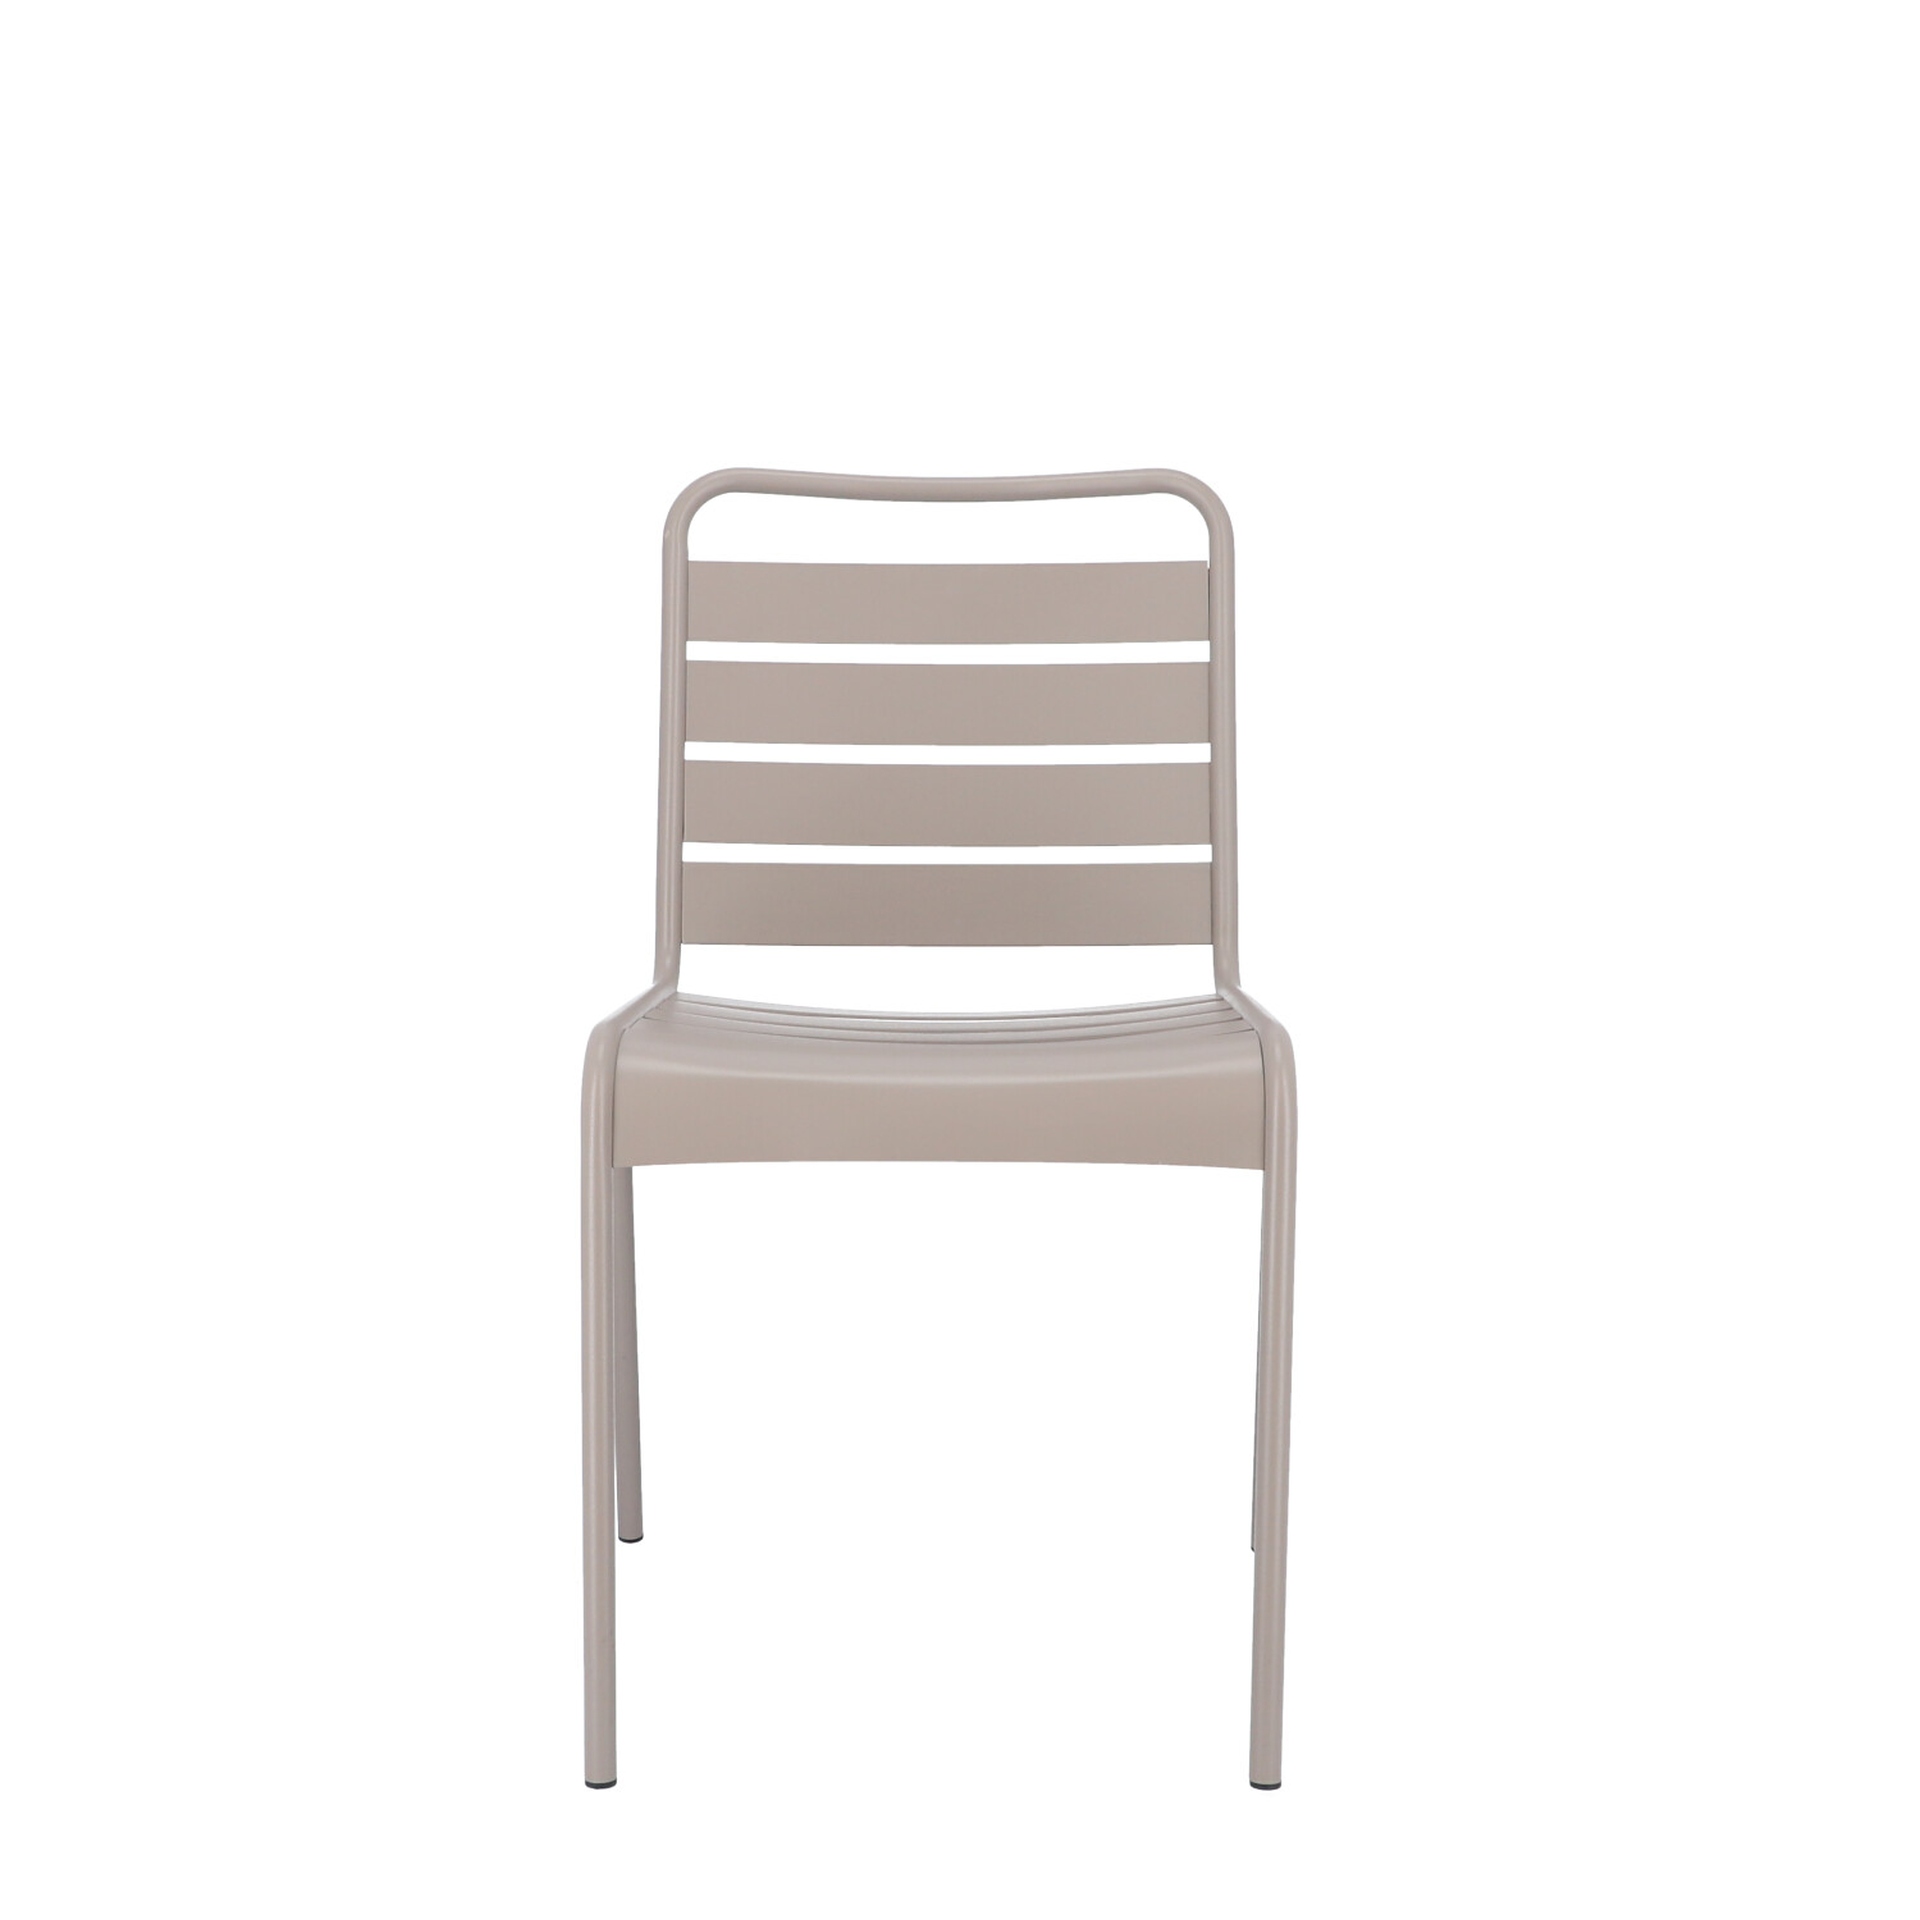 Der moderne Stapelstuhl Mya wurde aus Aluminium gefertigt und hat einen taupe Farbton. Designet wurde der Stuhl von der Marke Jan Kurtz.